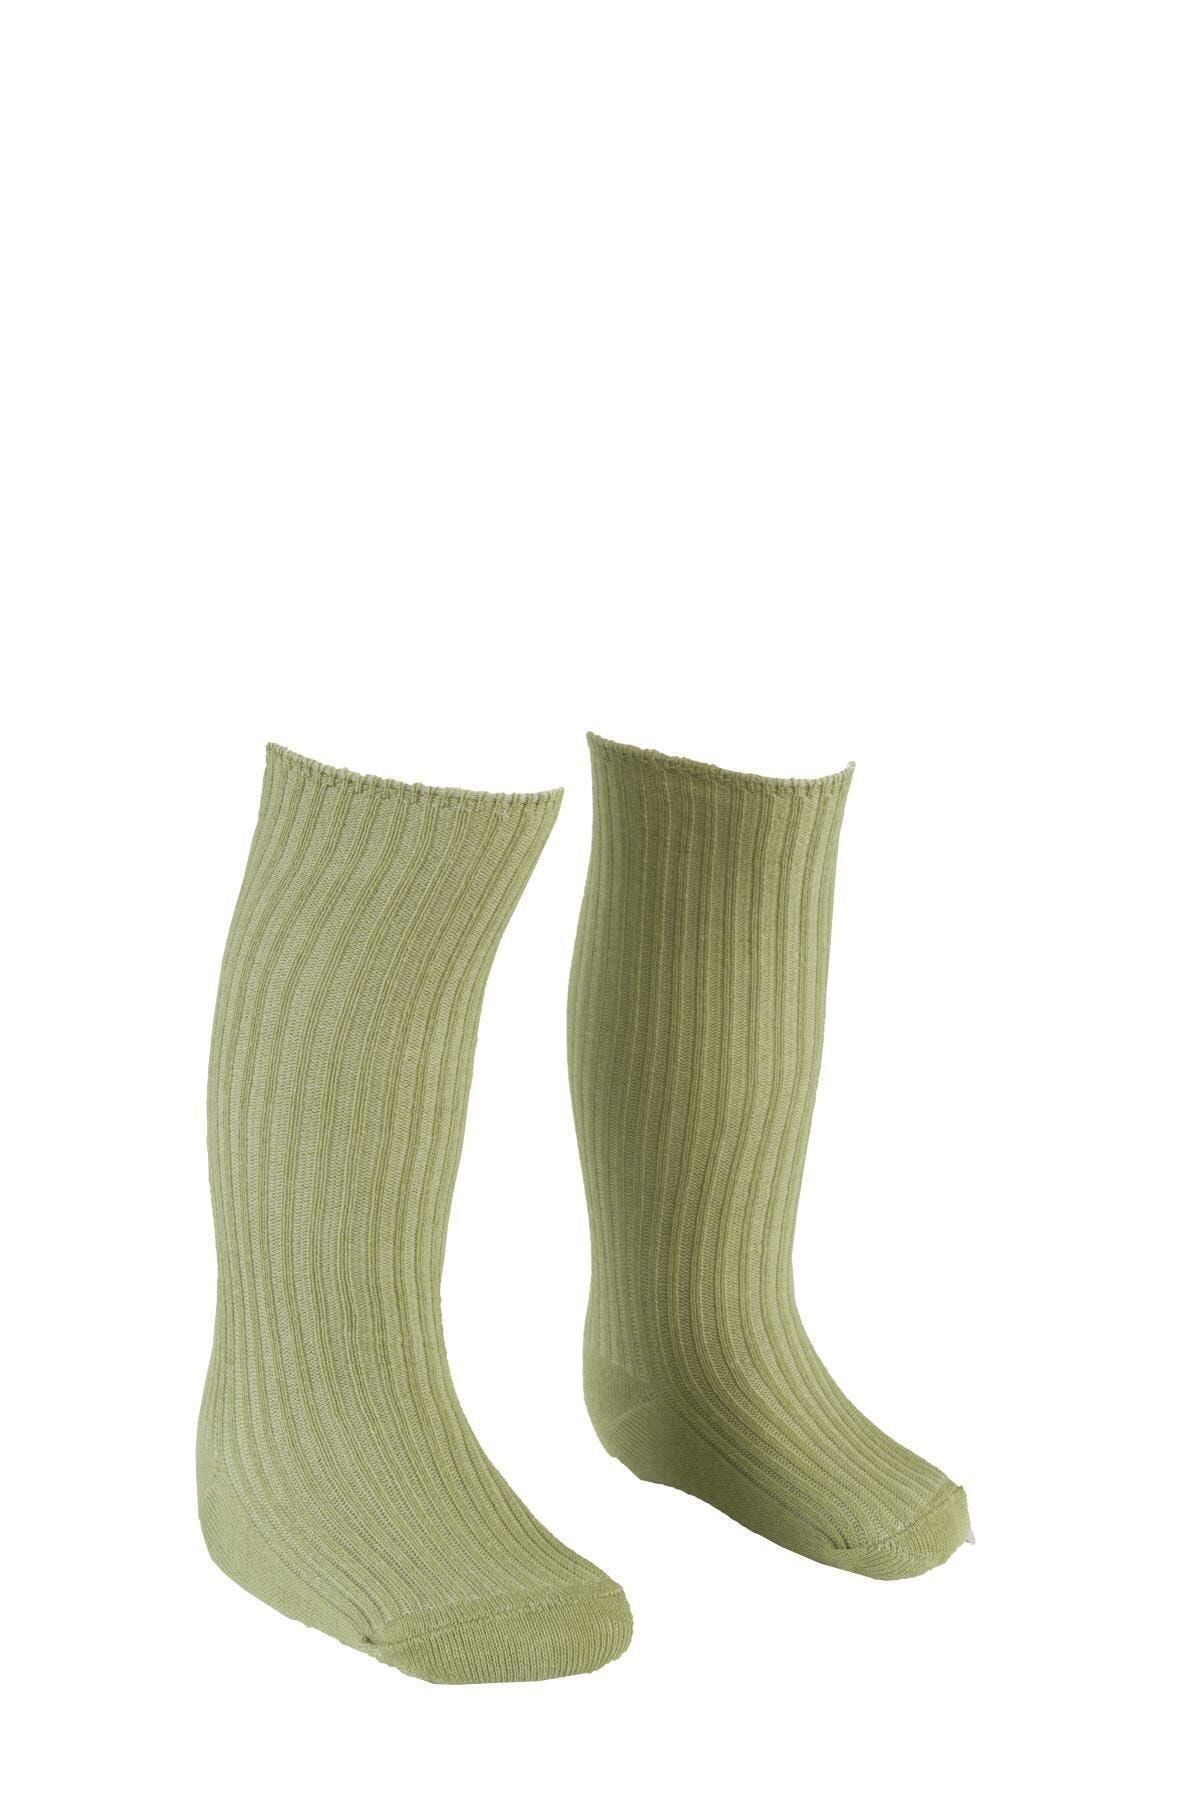 BEBEĞİME ÇORAP Dizaltı Çorap Açık Yeşil 1-2 Yaş Kız-erkek Bebek / Kız- Erkek Çocuk